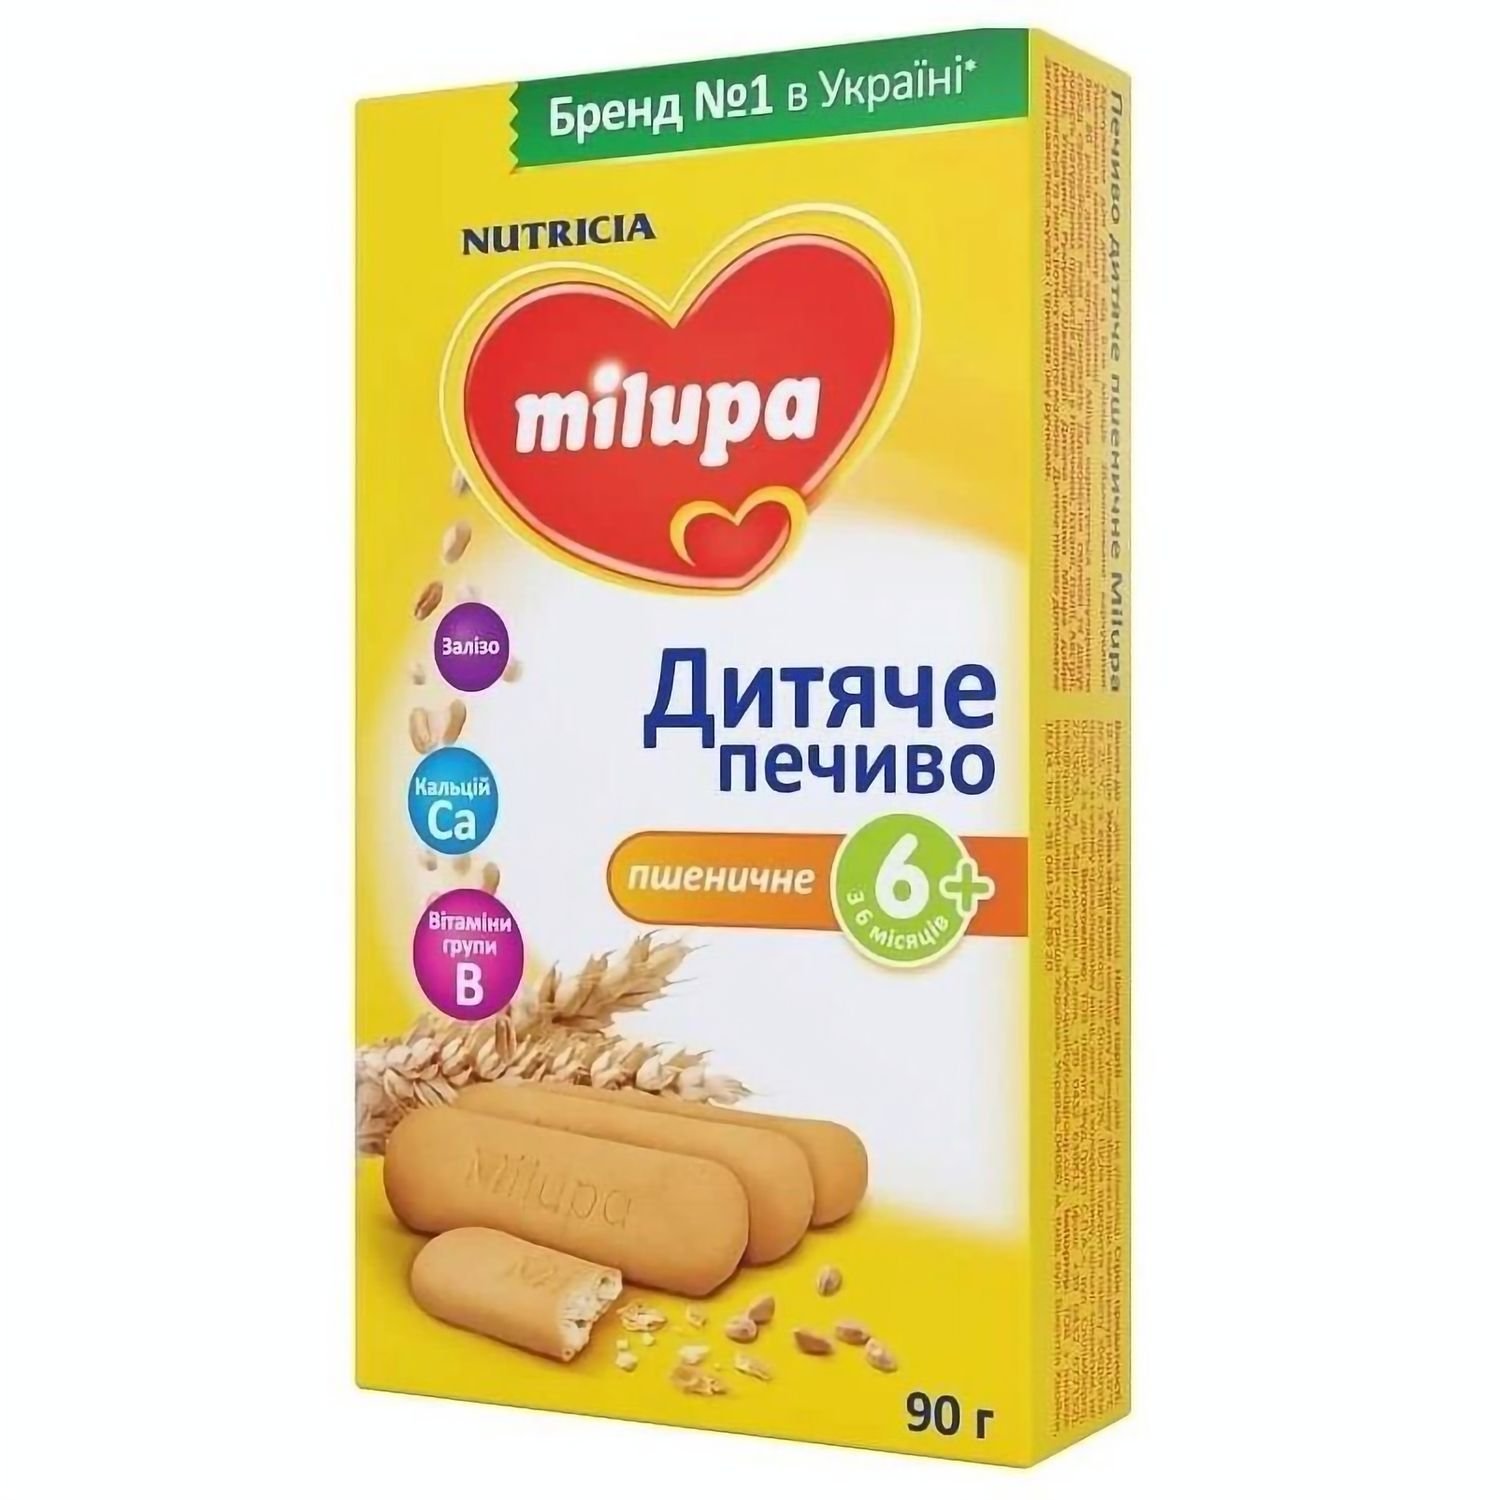 Дитяче печиво Milupa, 90 г - фото 1